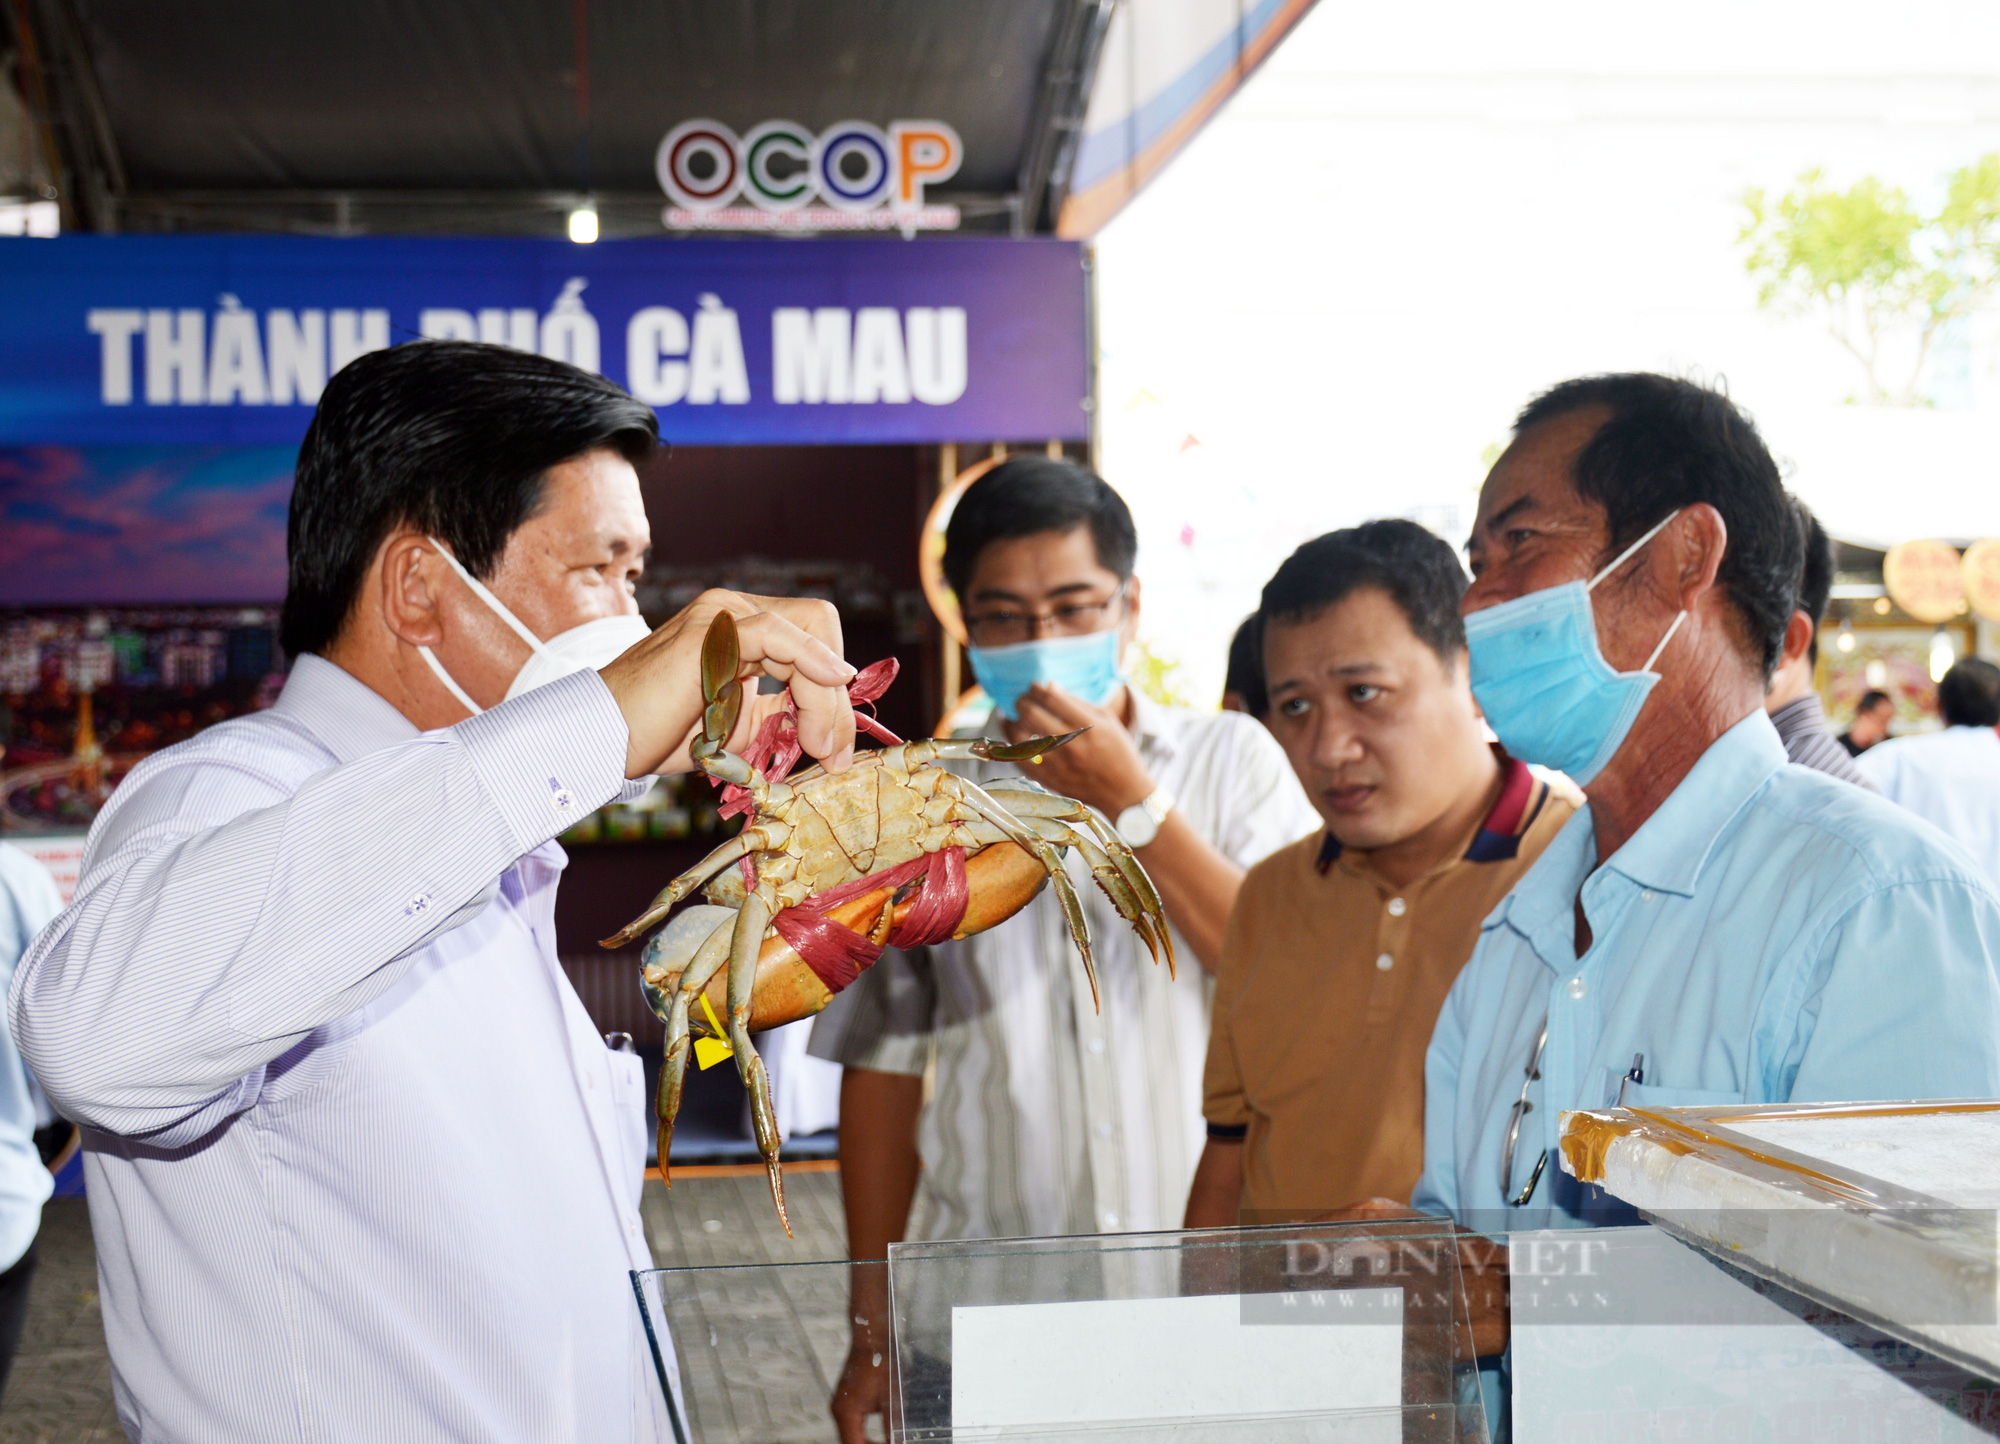 La liệt đặc sản Cà Mau tại ngày hội về sản phẩm OCOP lớn nhất tỉnh - Ảnh 11.